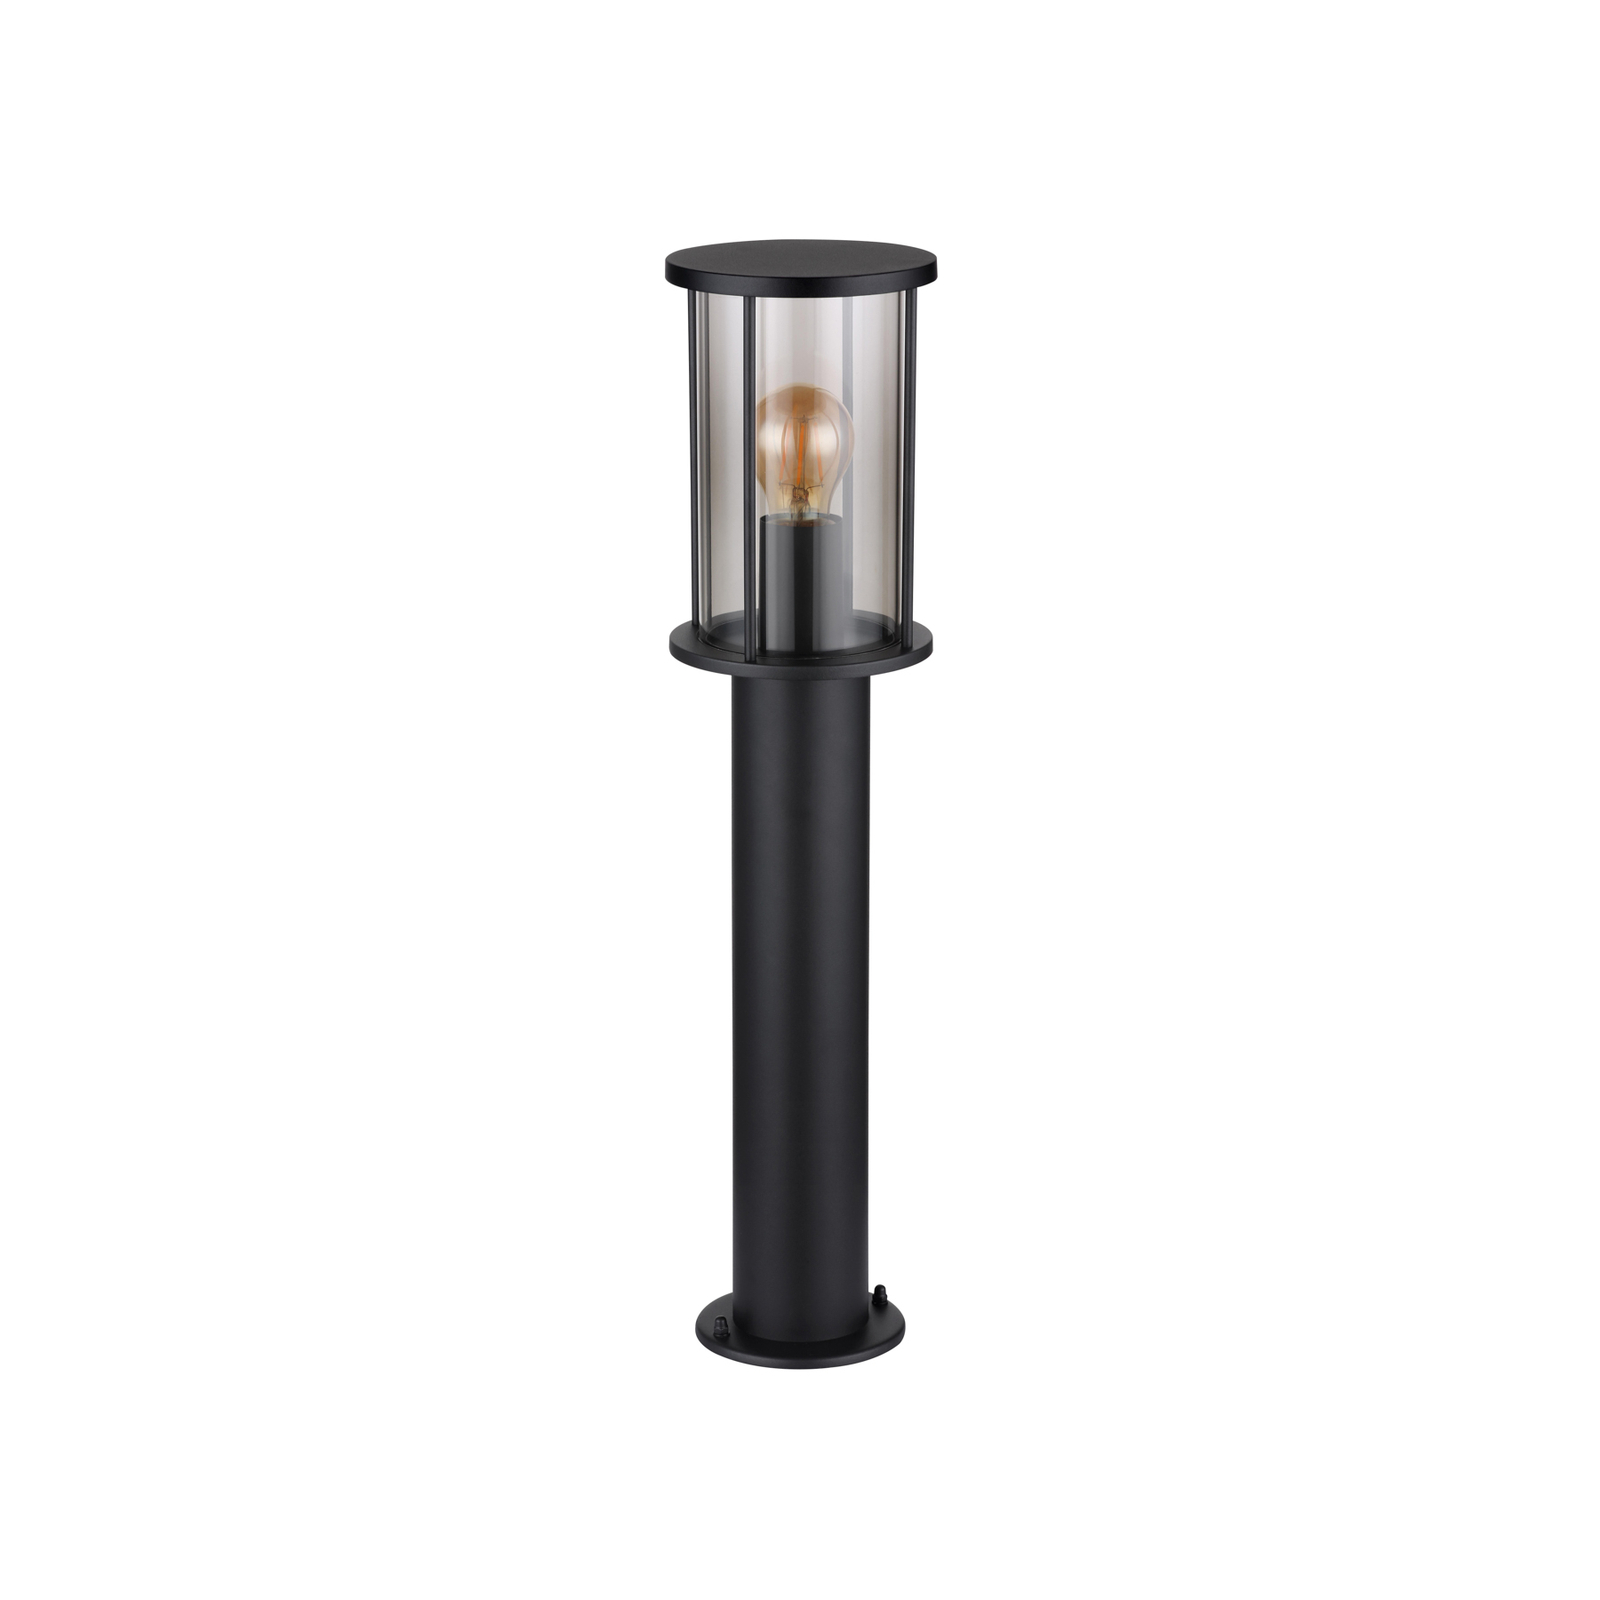 Gracey állólámpa, magasság 60 cm, fekete, rozsdamentes acél, IP54